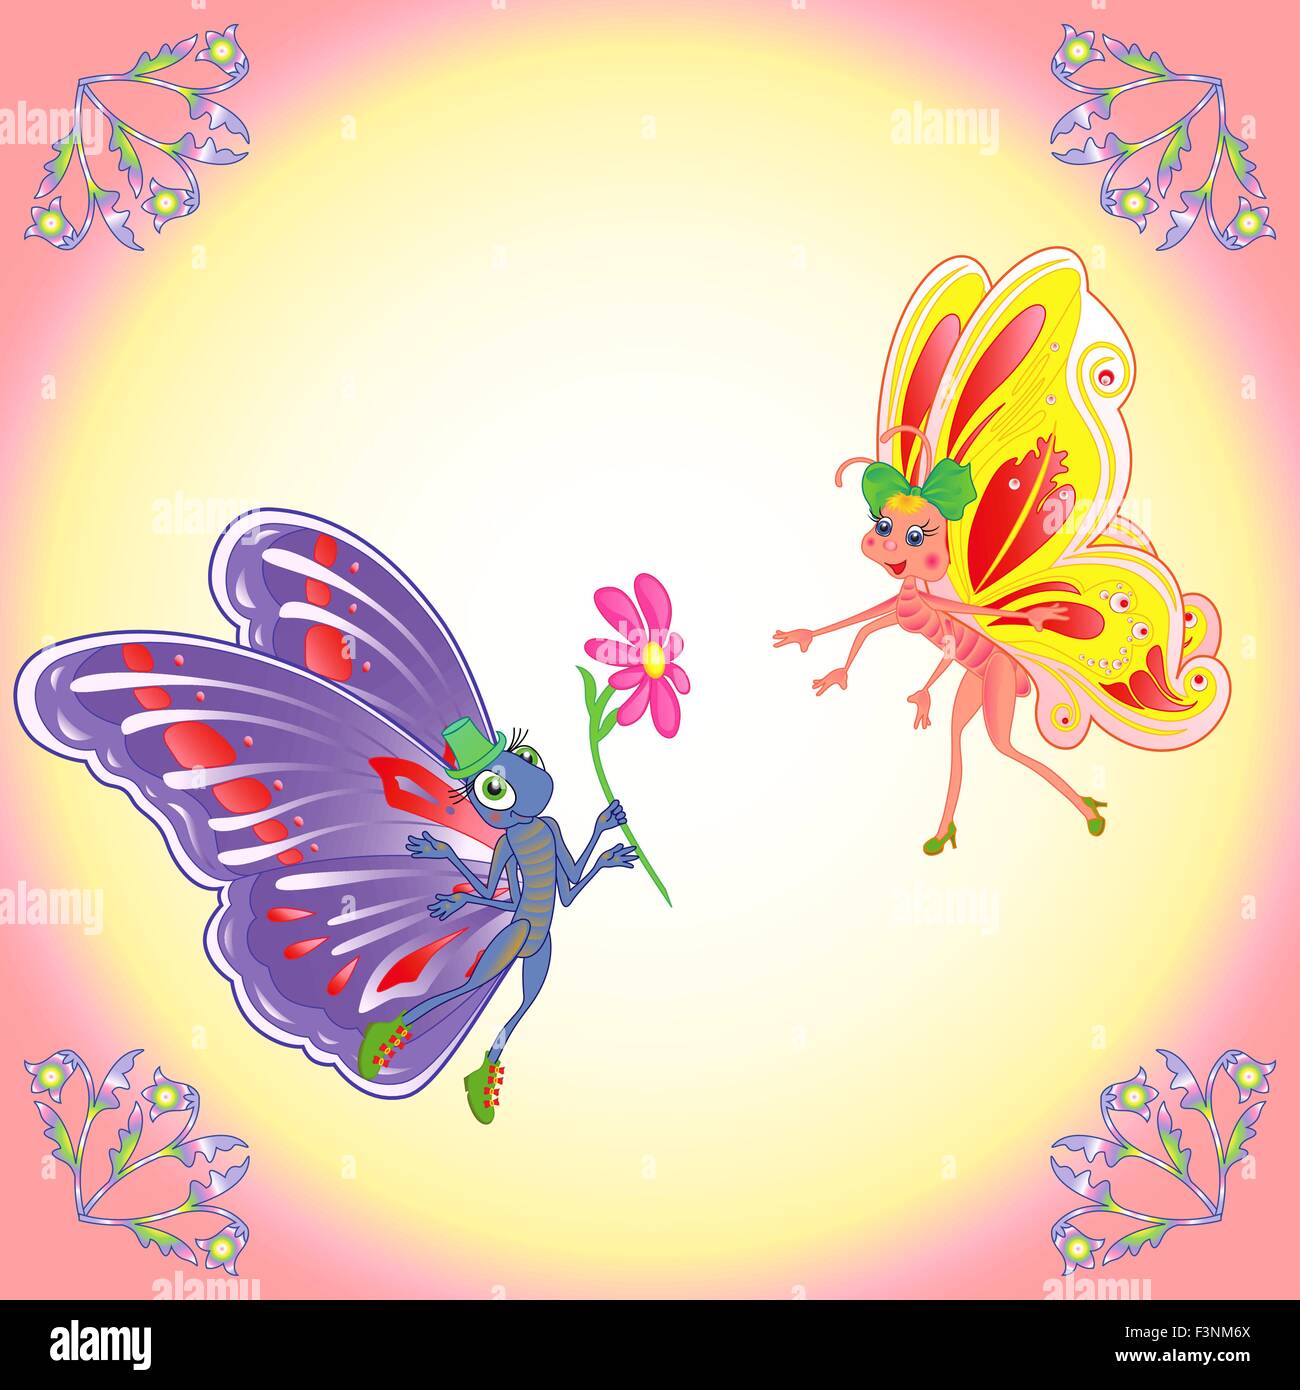 Coloridas mariposas de dibujos animados par en vuelo romántico en una iluminación de fondo. Dibujo a mano ilustración vectorial Ilustración del Vector